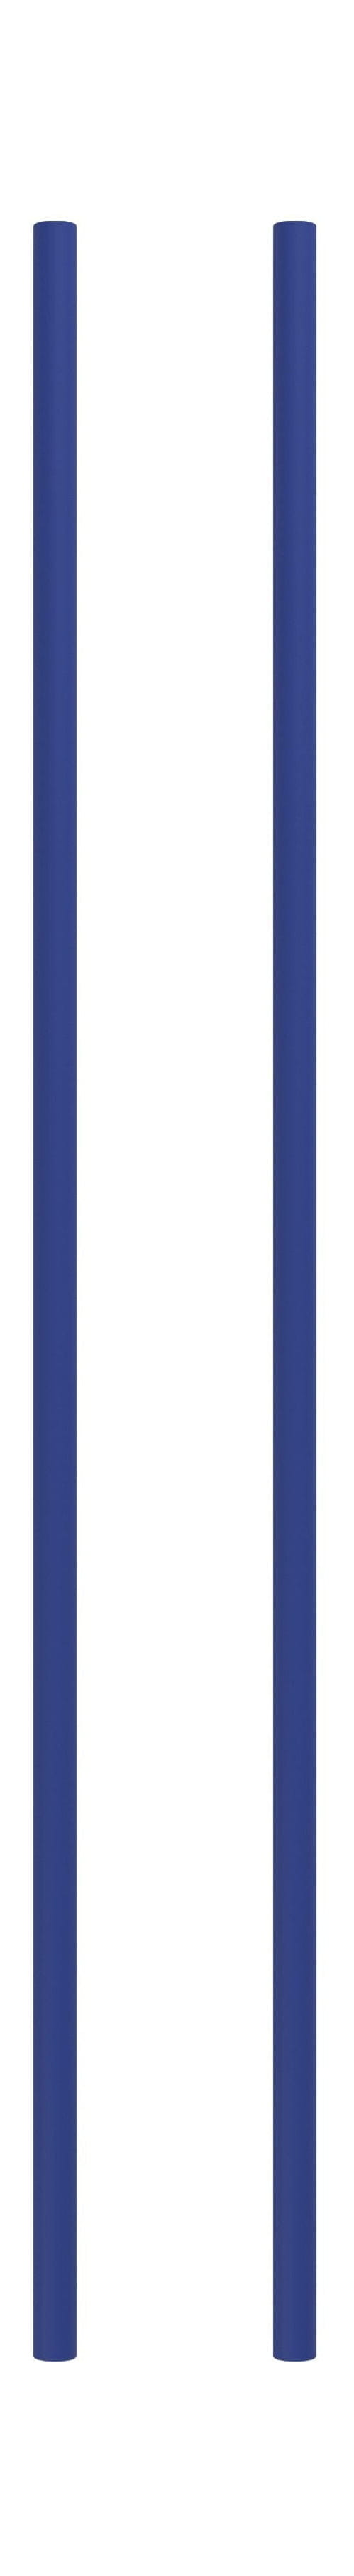 Moebe hyller system/vegghyller 85 cm dyp blå, sett med 2